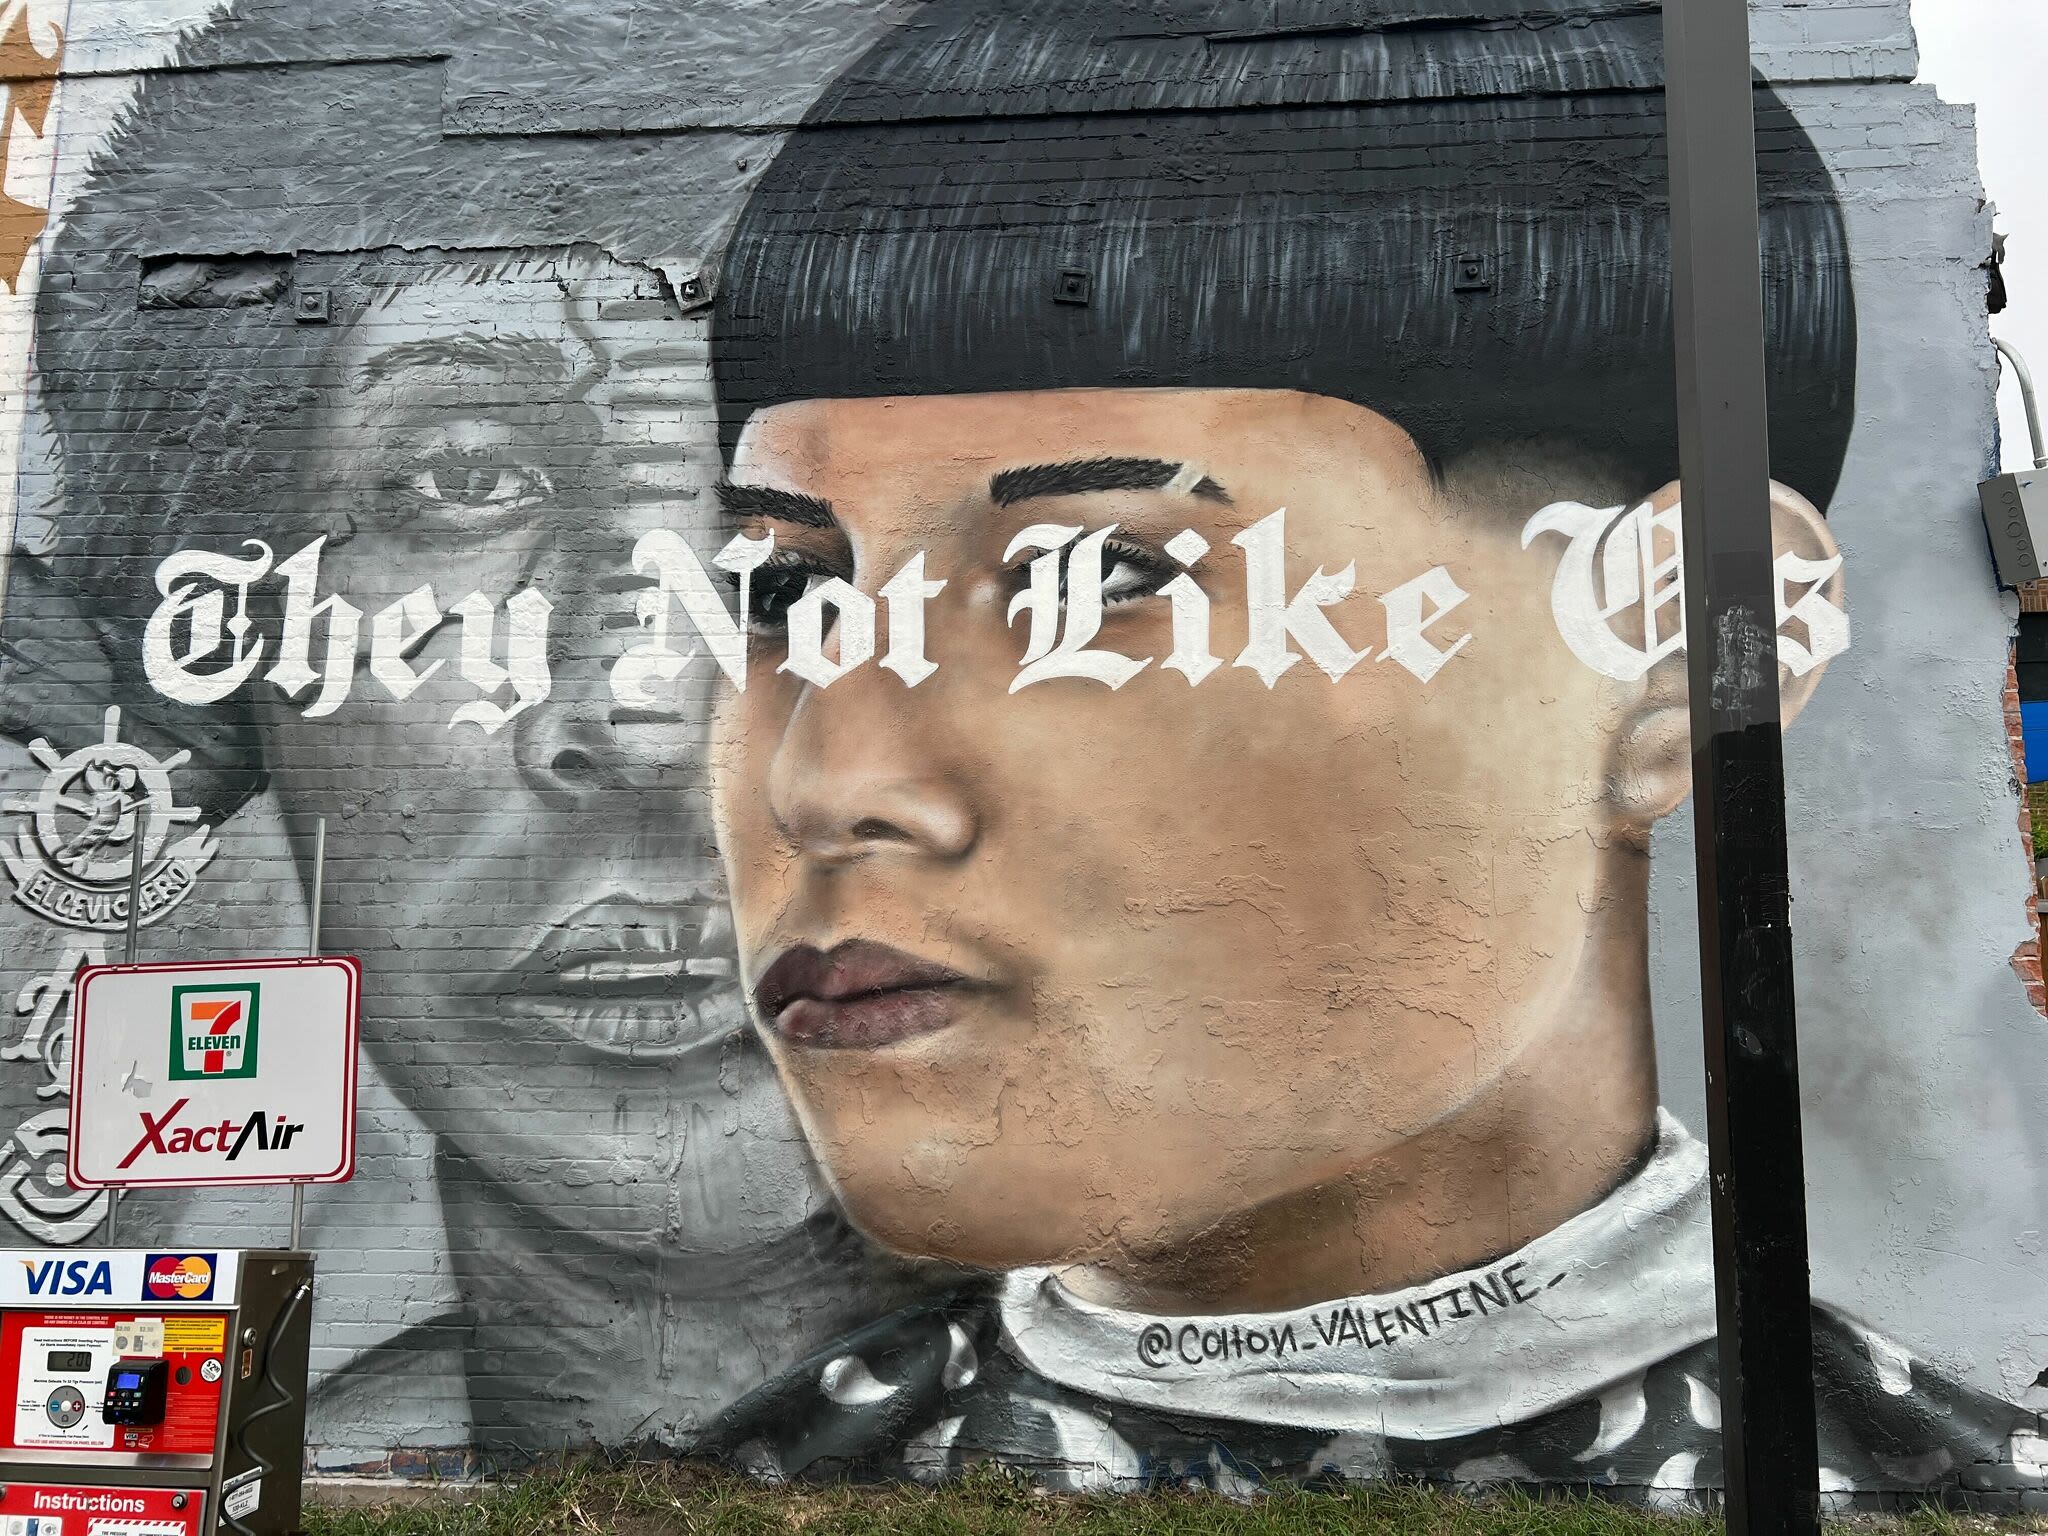 New San Antonio mural showcases 'Edgar haircut' amid controversy